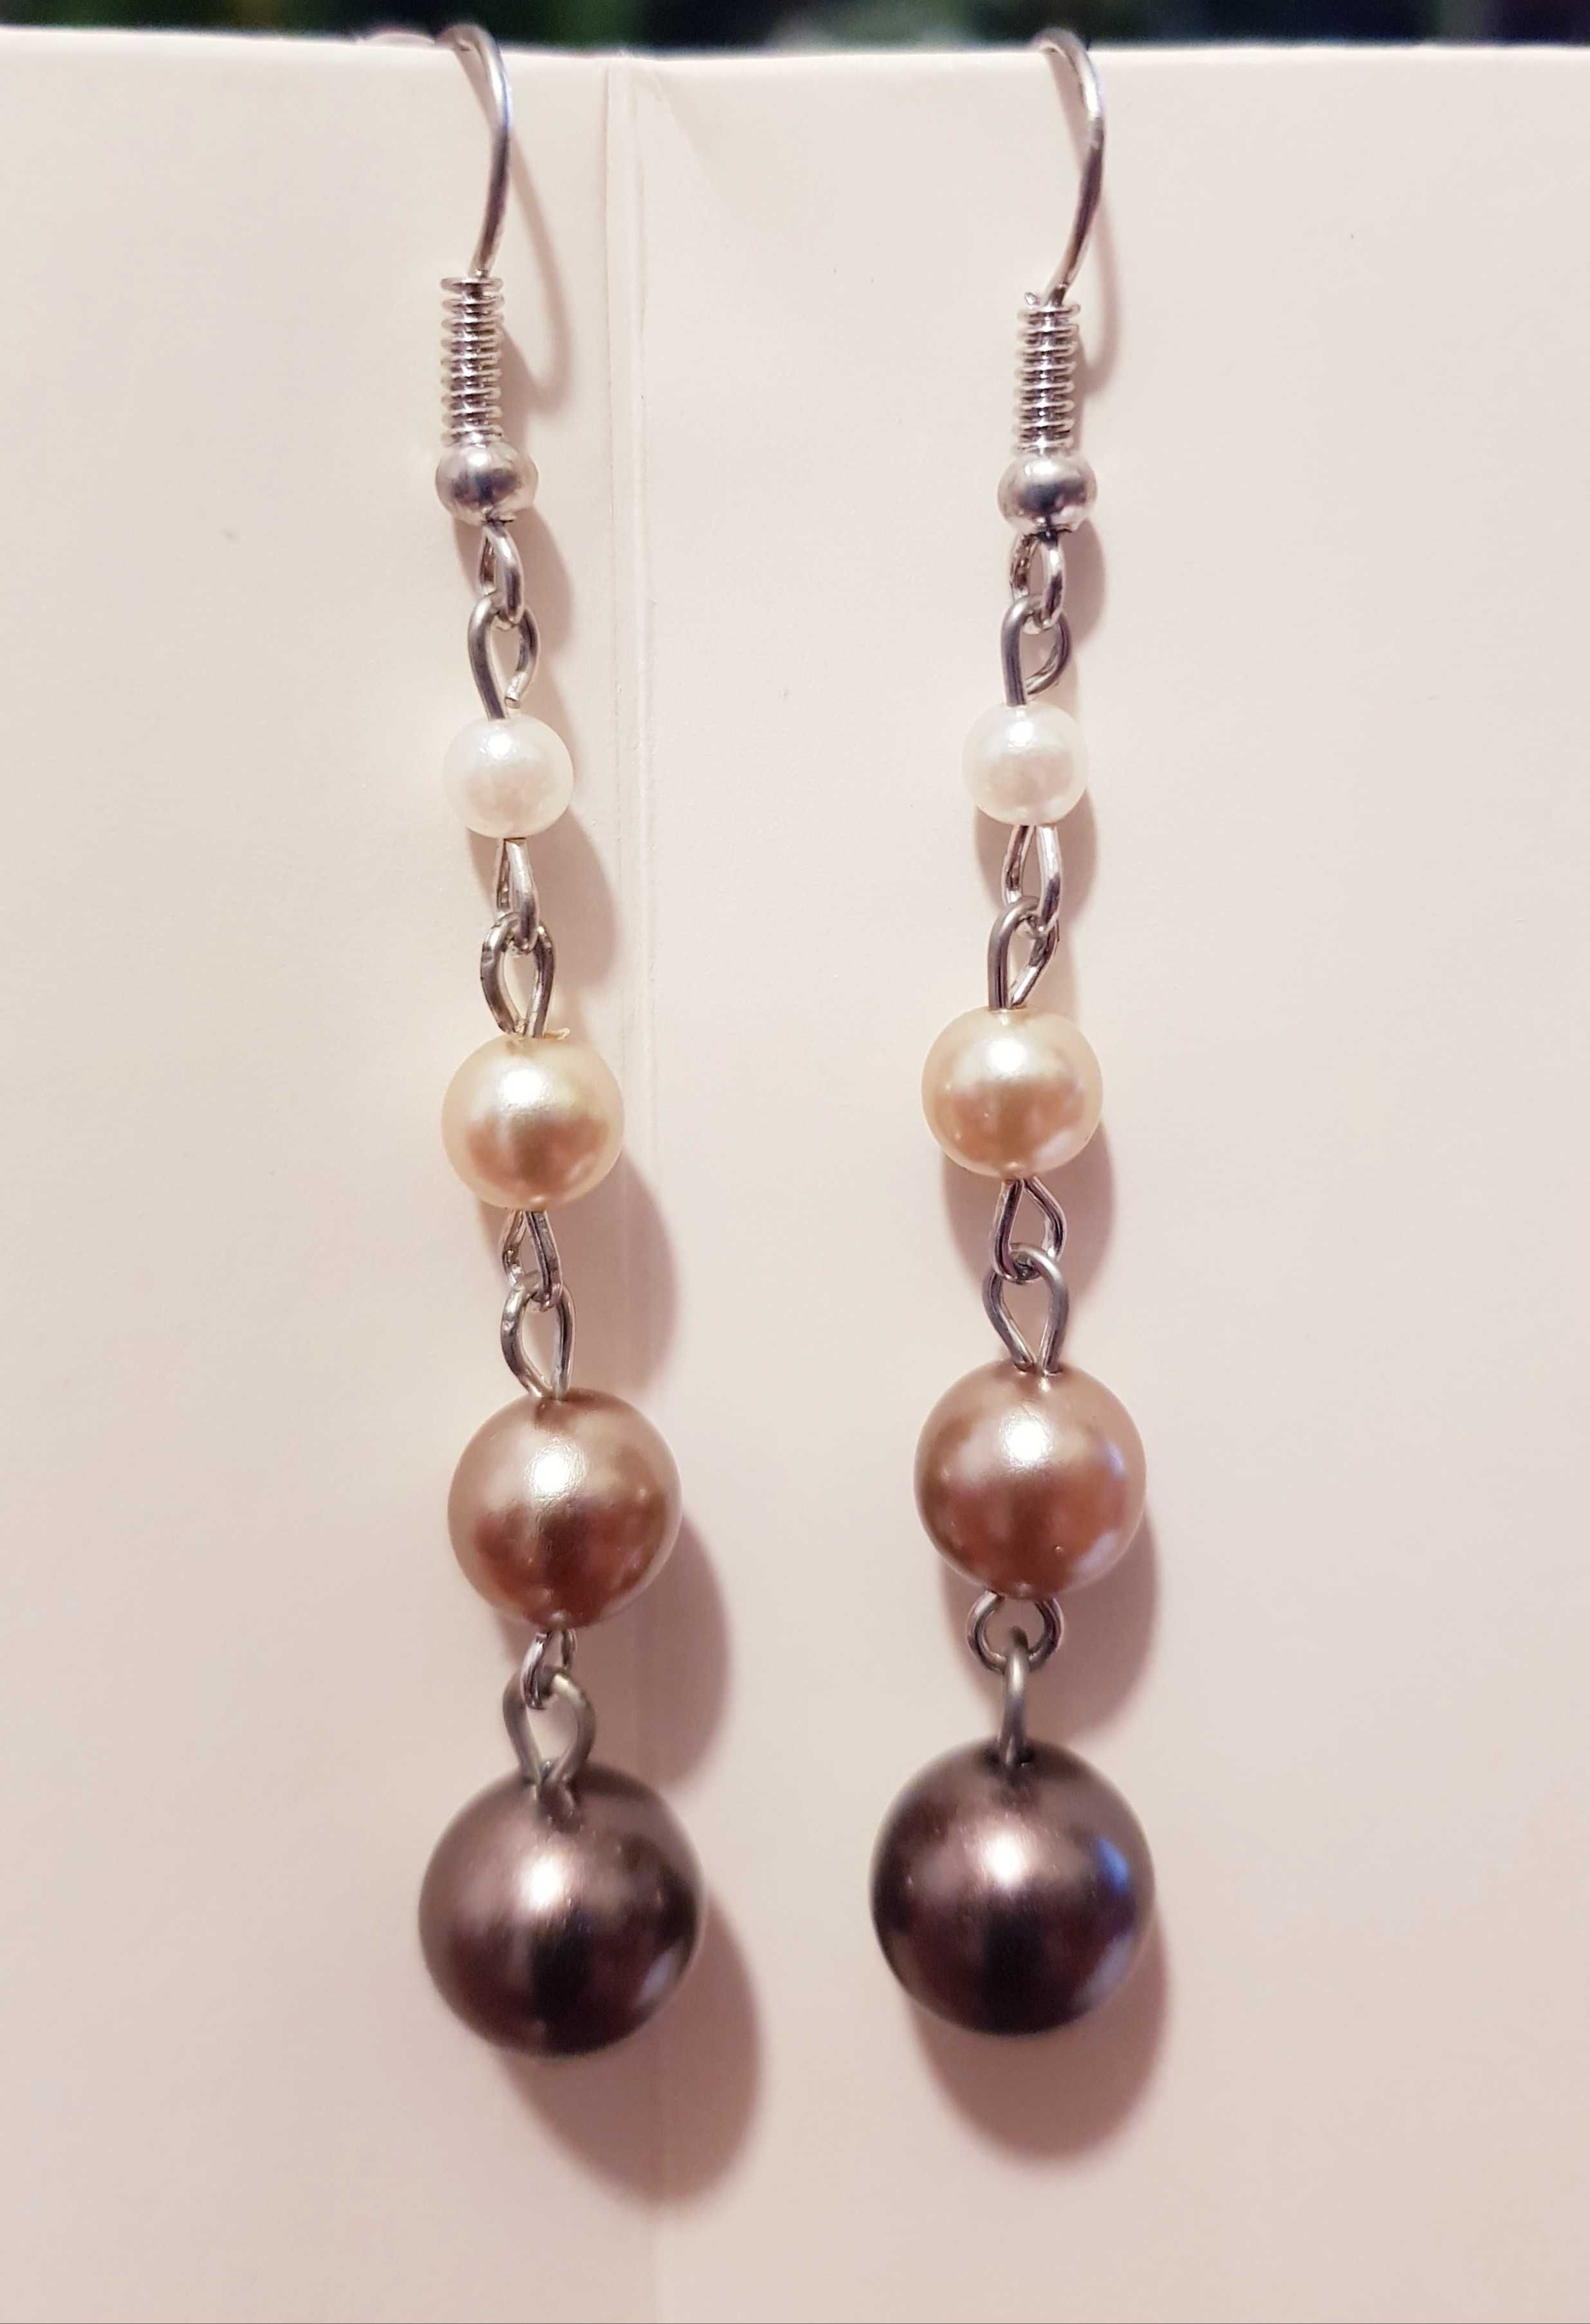 Kolczyki wiszące 4 kulki perłowe długość 6,5cm